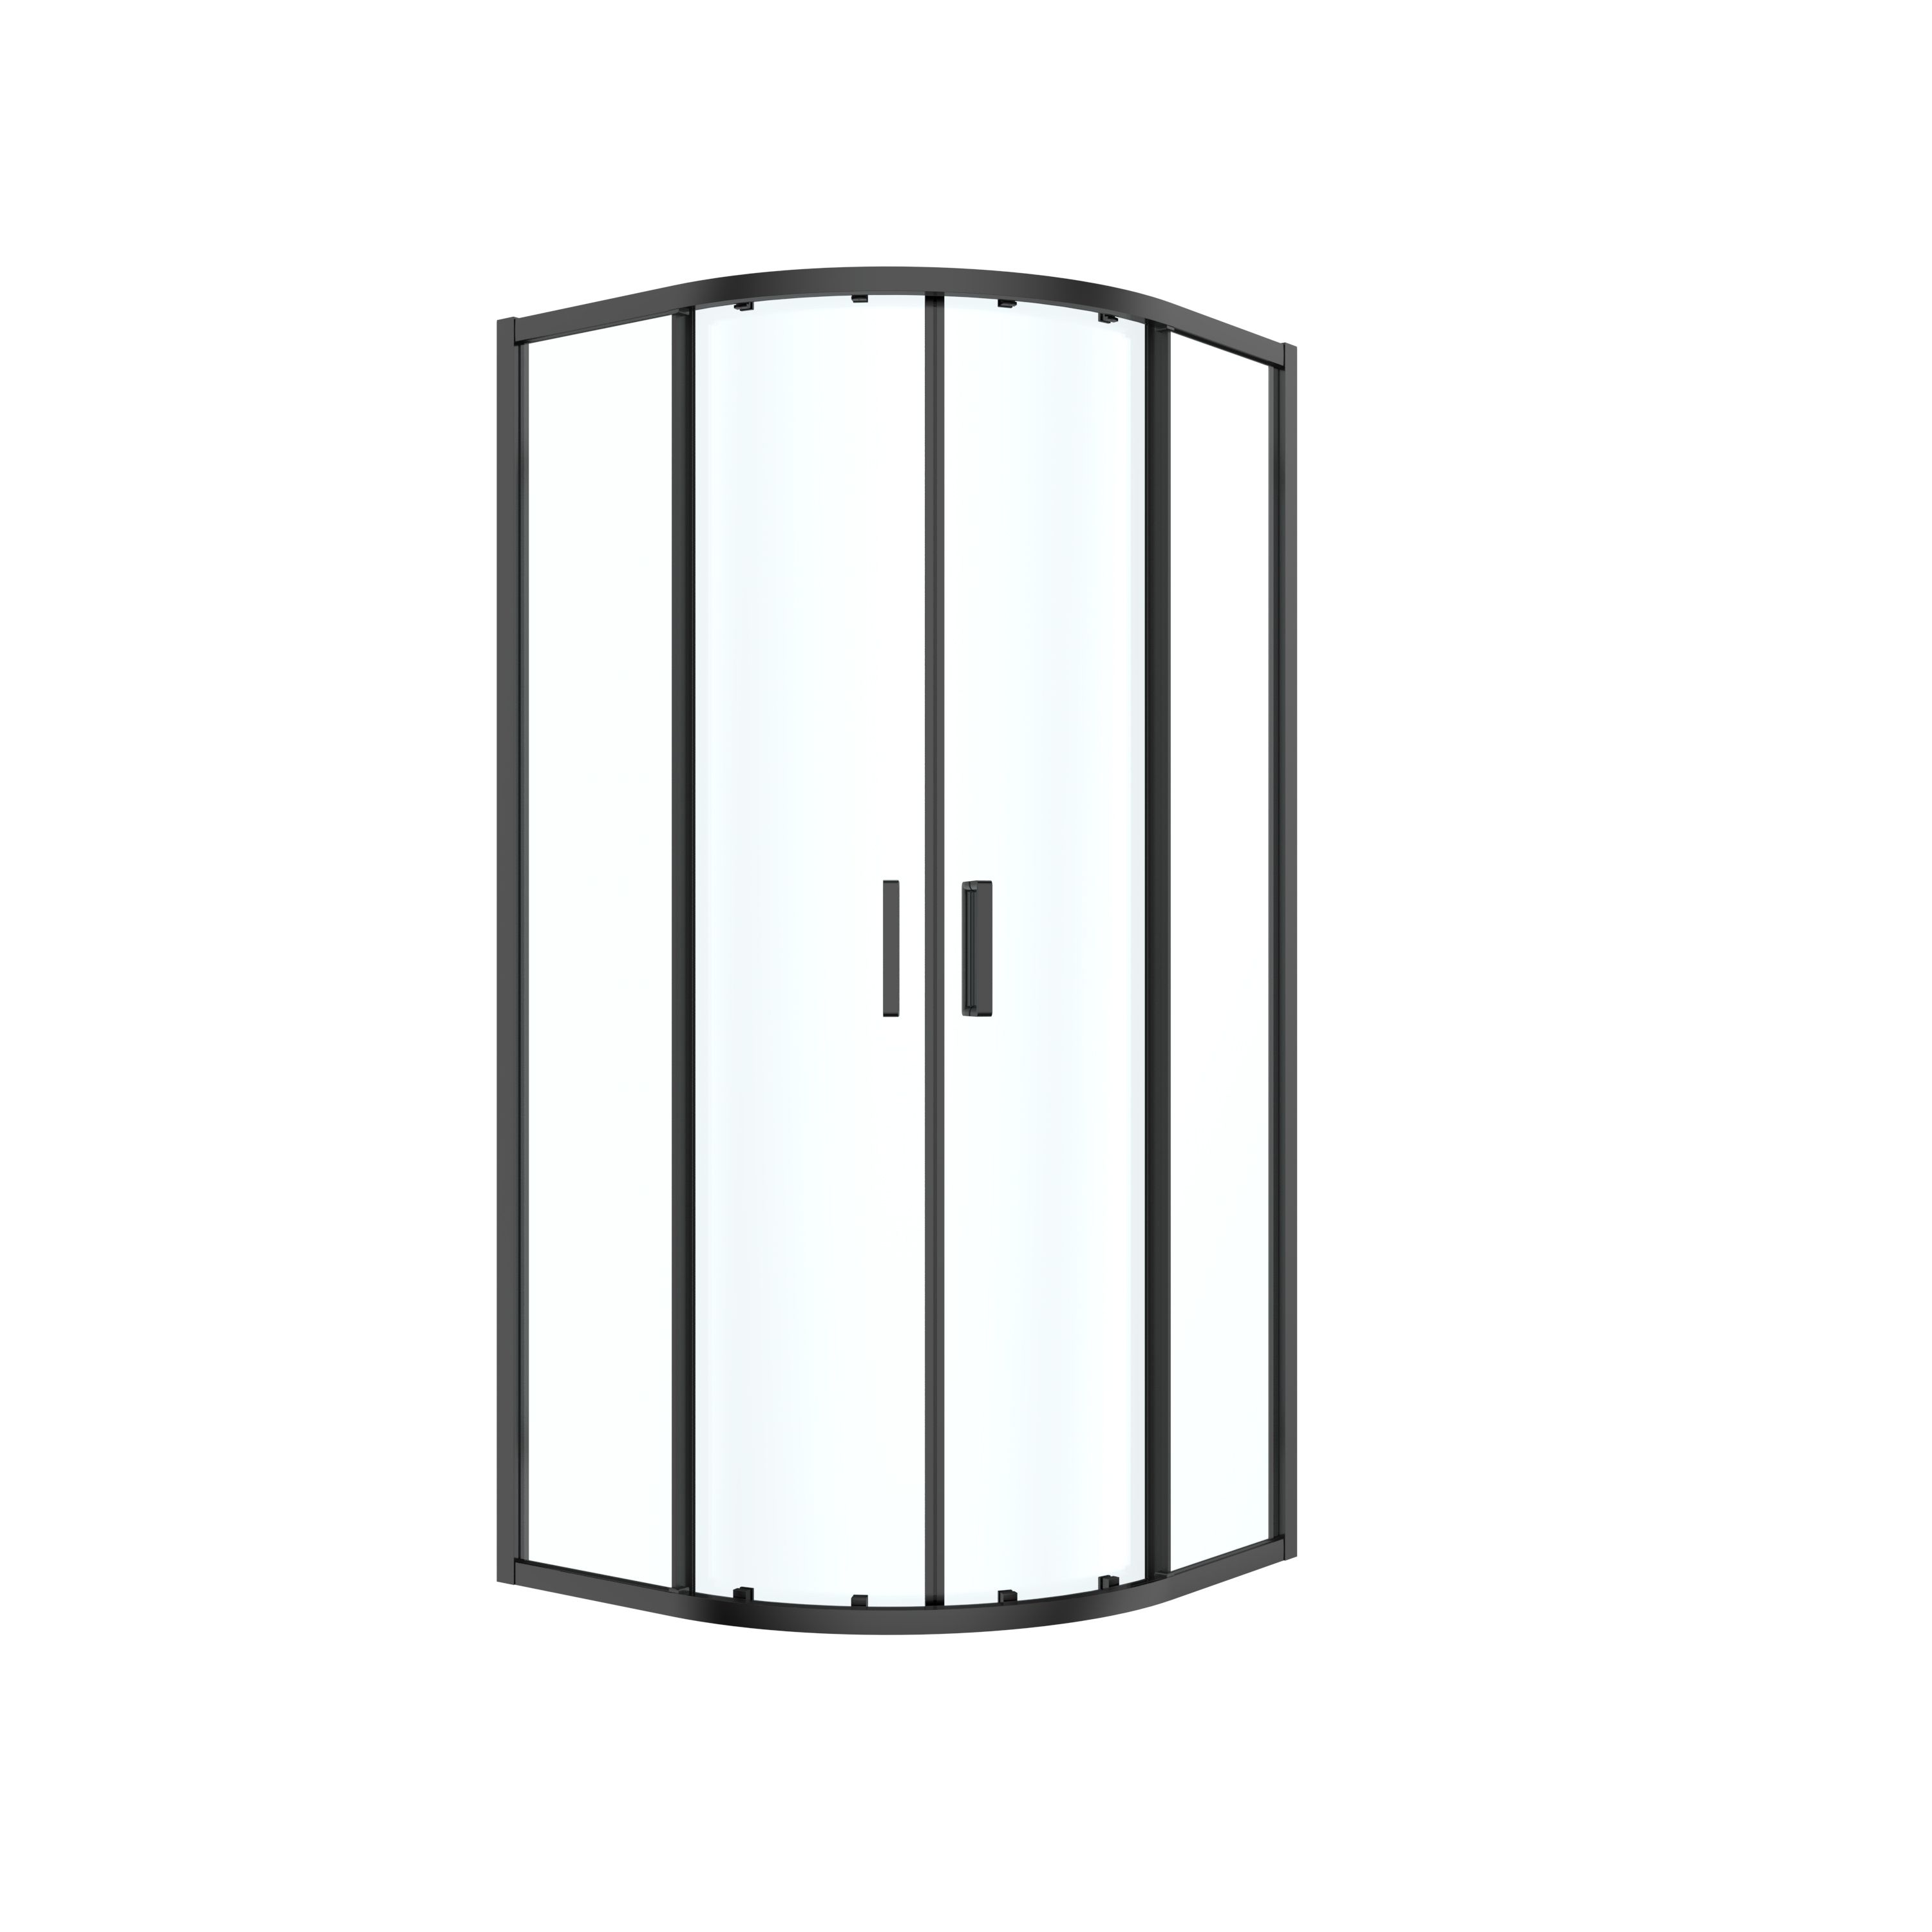 GoodHome Ledava Clear glass Quadrant Shower enclosure - Corner entry double sliding door (W)80cm (D)80cm